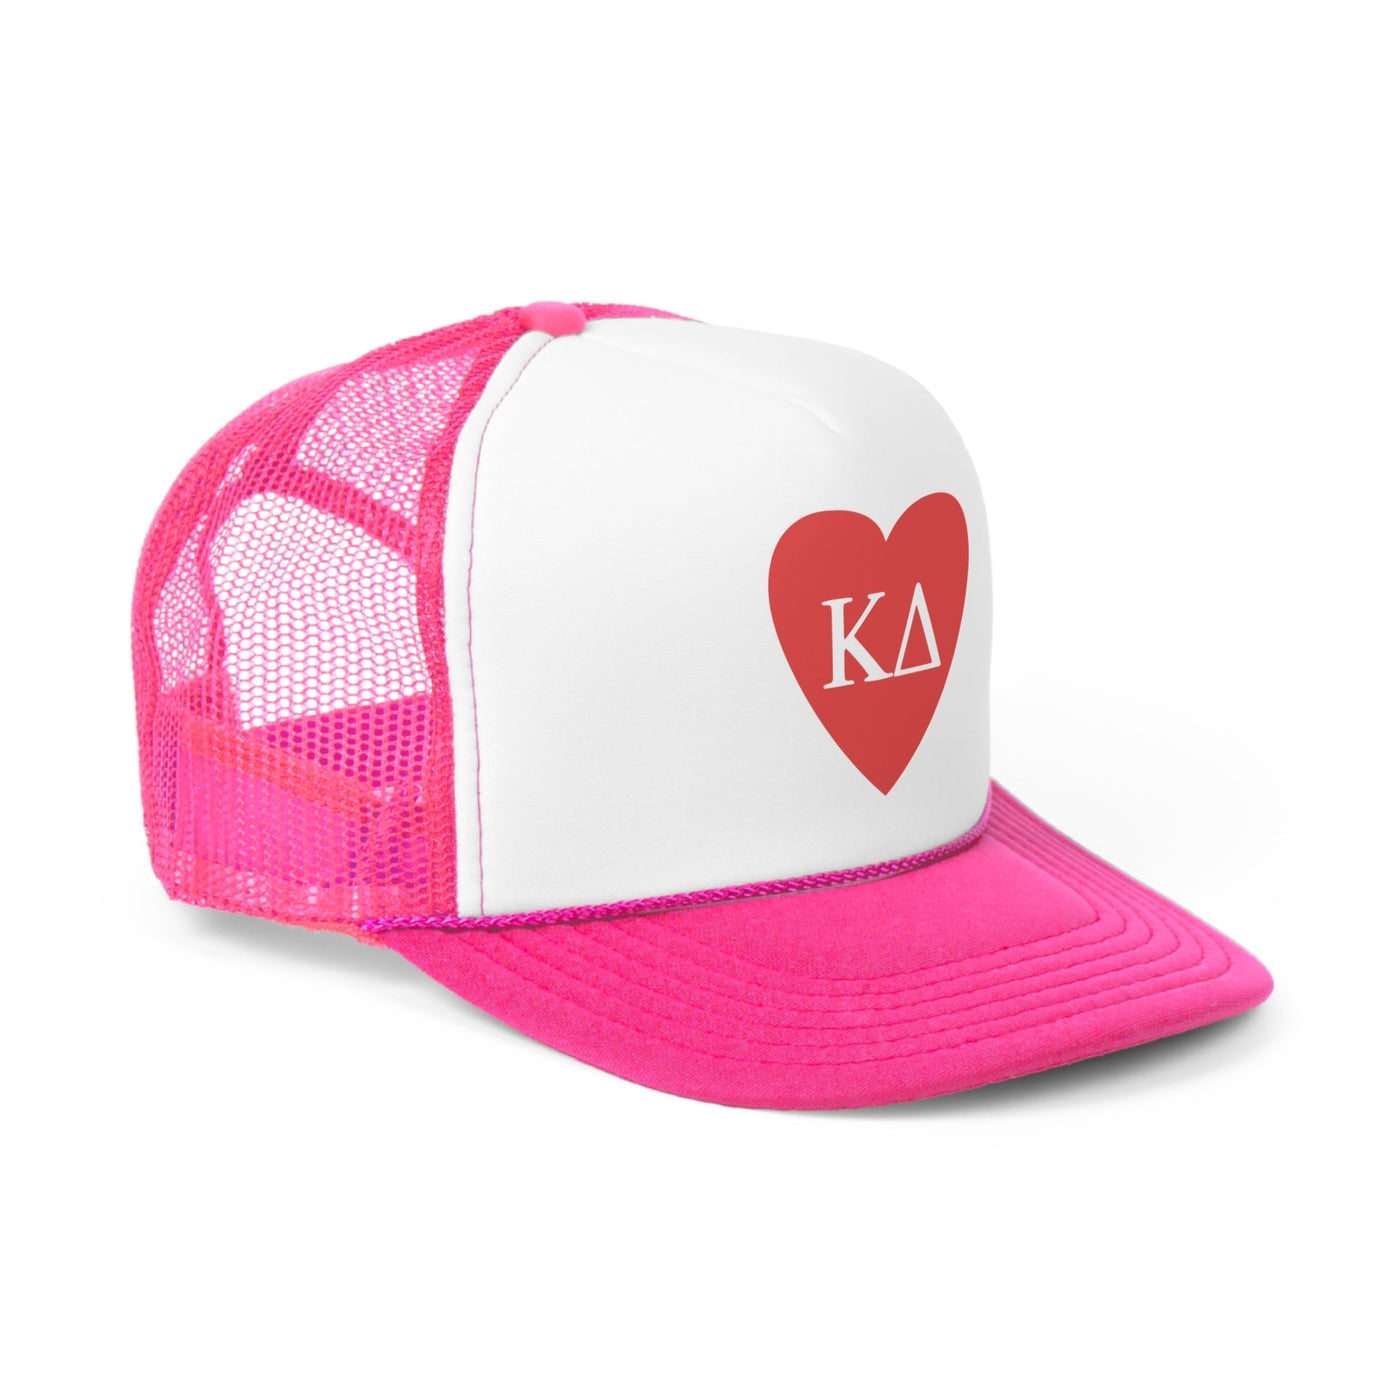 Kappa Delta Heart Letters Sorority Foam Trucker Hat